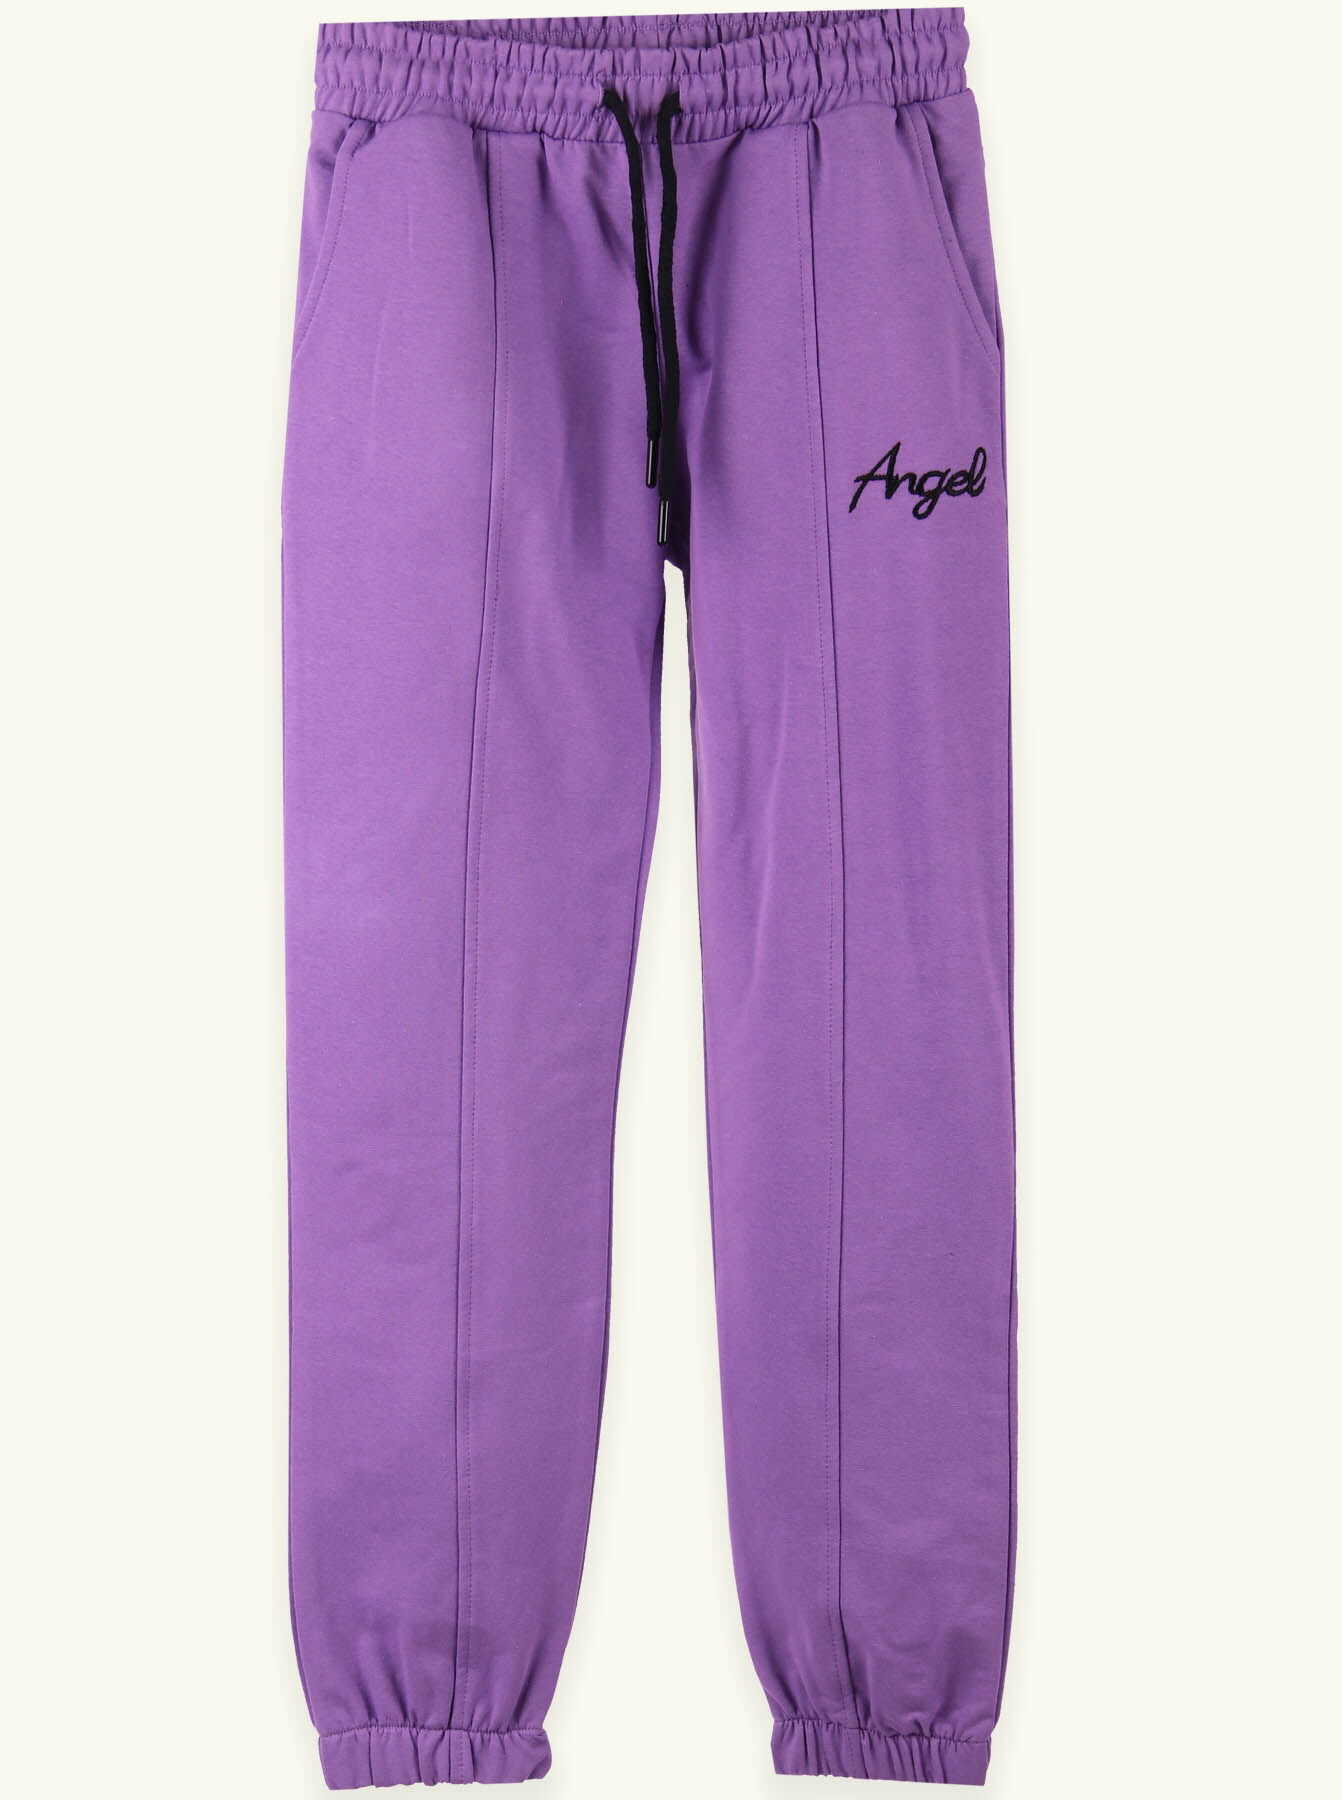 Спортивные штаны для девочки Breeze фиолетовые 15309 - цена